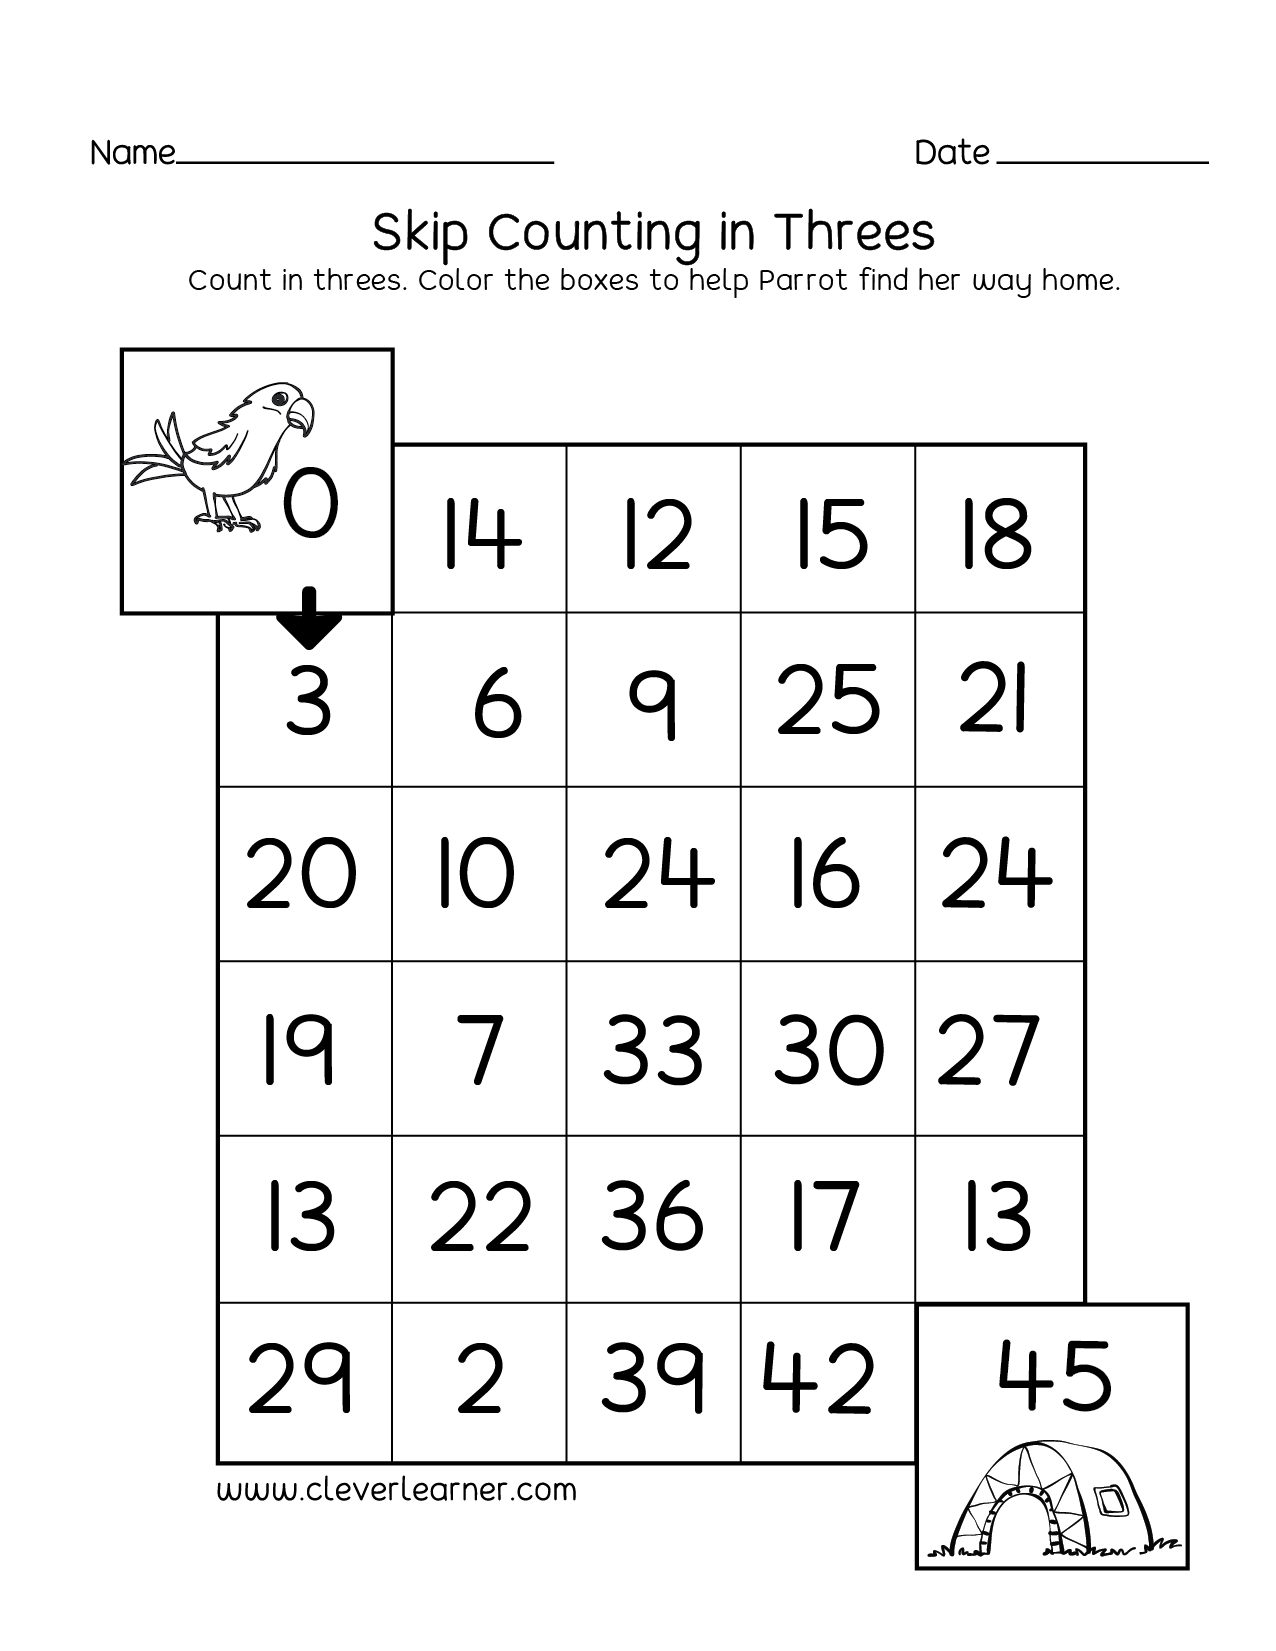 kidz-worksheets-preschool-counting-numbers-worksheet2